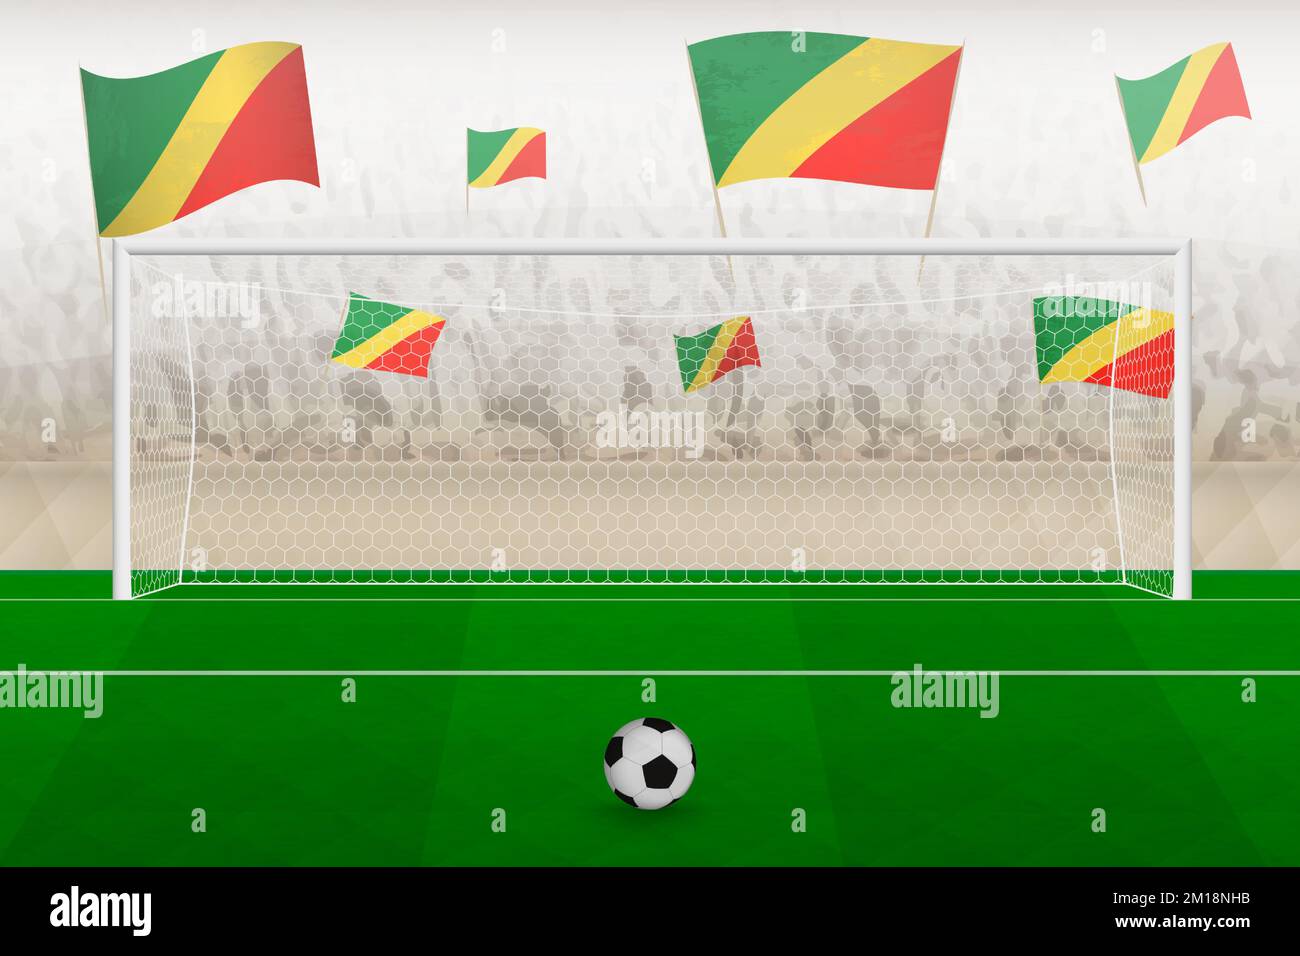 Les fans de l'équipe de football du Congo avec des drapeaux du Congo applaudissent au stade, le concept de penalty kick dans un match de football. Illustration de vecteur sportif. Illustration de Vecteur